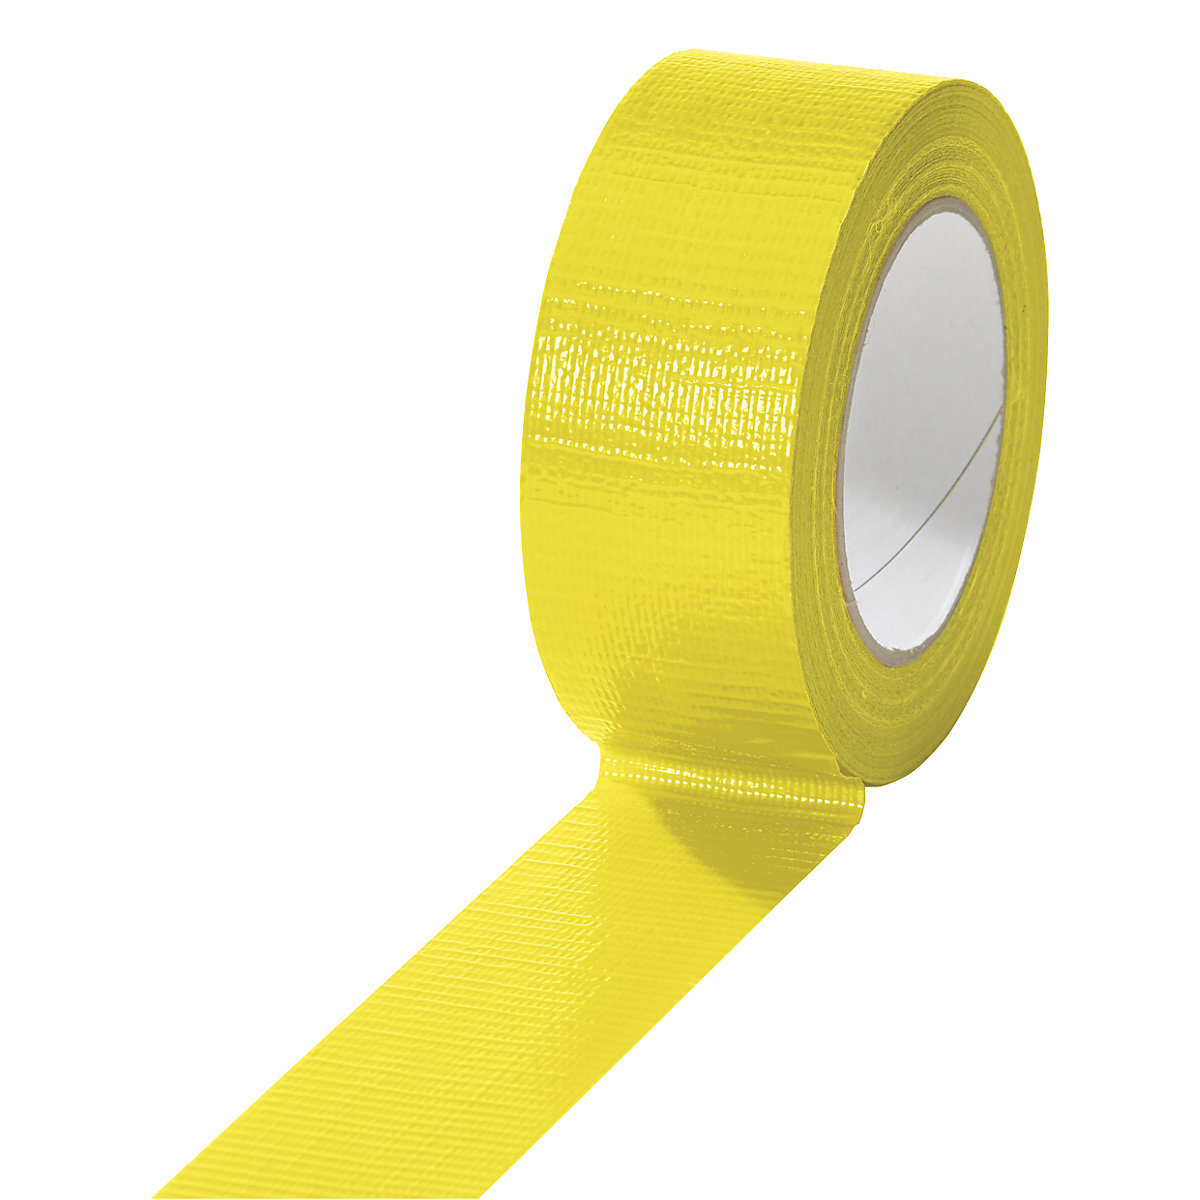 Fita de tecido, em diversas cores, embalagem com 24 rolos, amarelo, largura da fita 38 mm-8